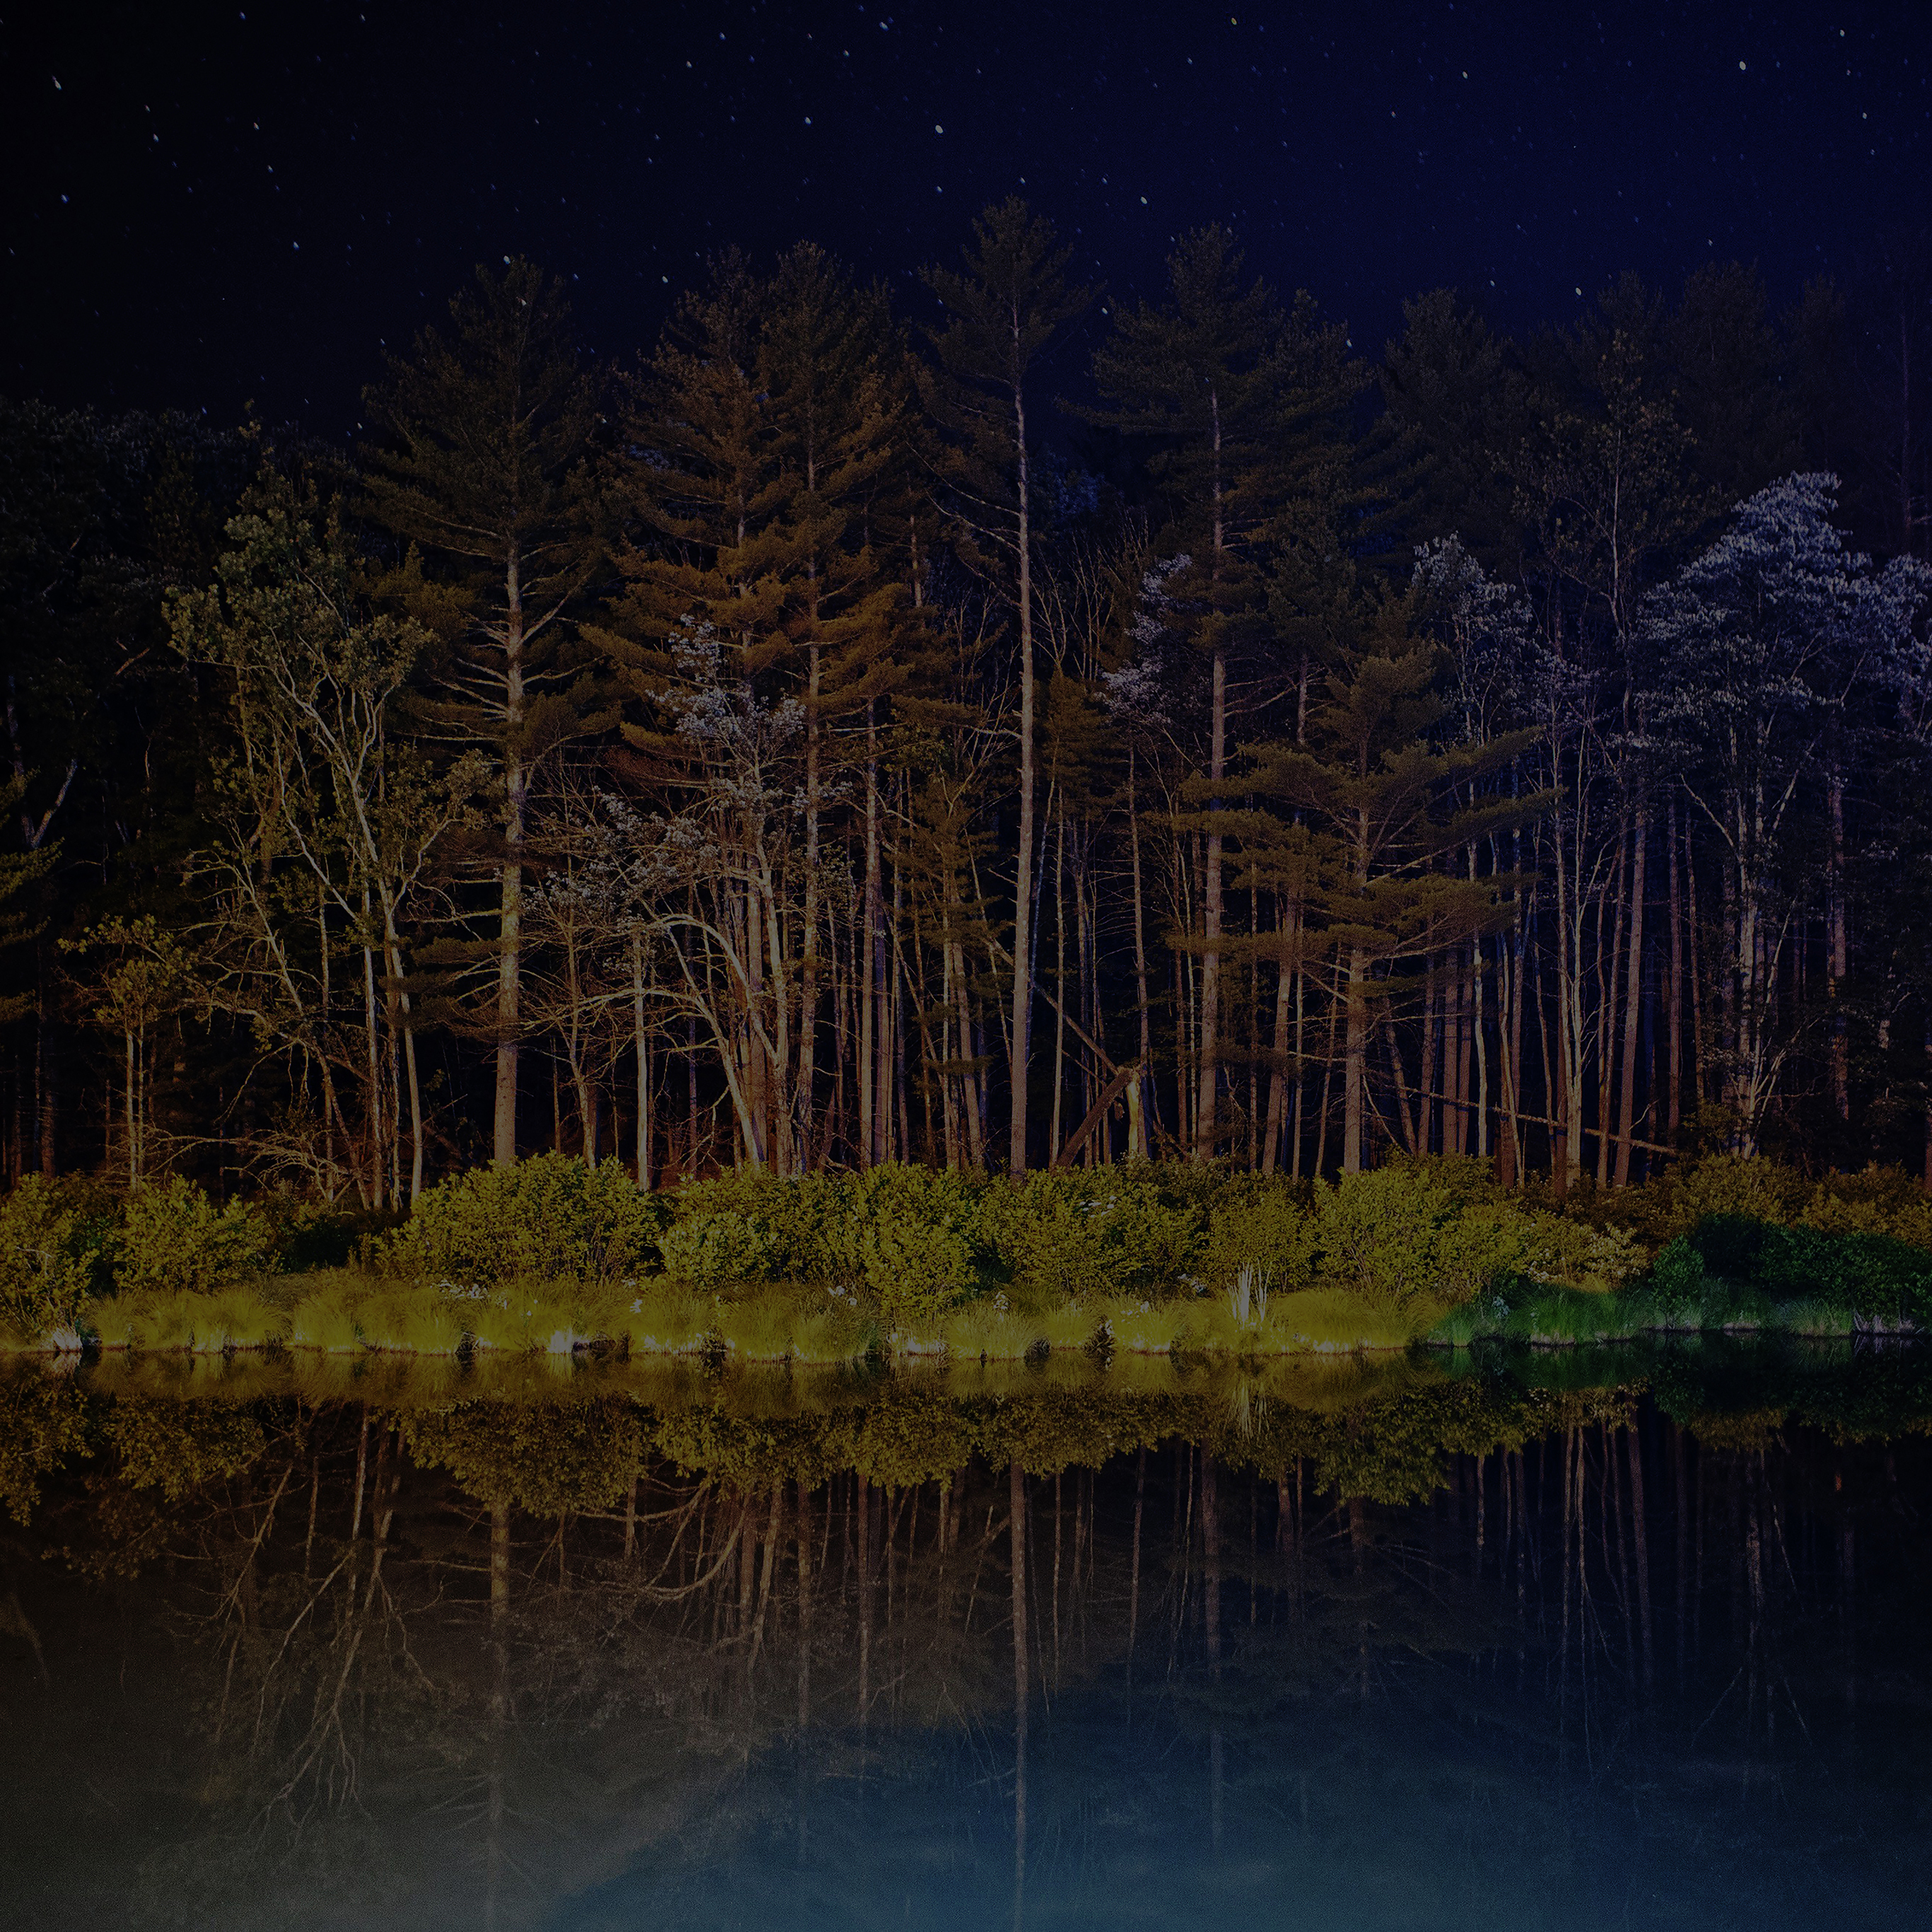 Night Dark Wood With Lake Nature